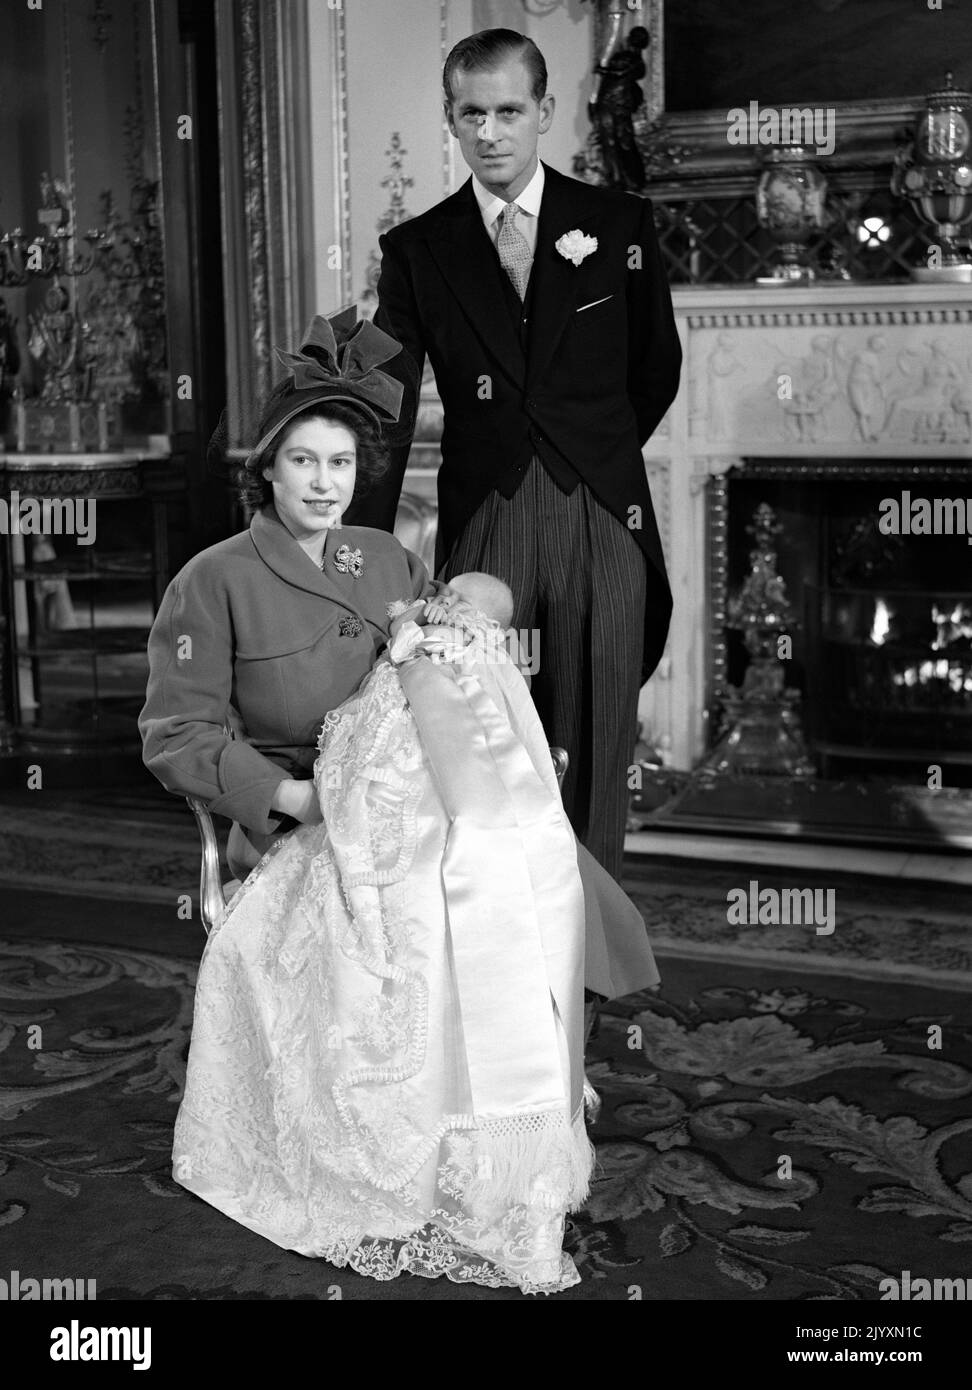 Datei-Foto vom 01/12/48 des Duke of Edinburgh mit Königin Elizabeth II hält Prinz Charles in seinem Taufkleid. Ausgabedatum: Donnerstag, 8. September 2022. Stockfoto